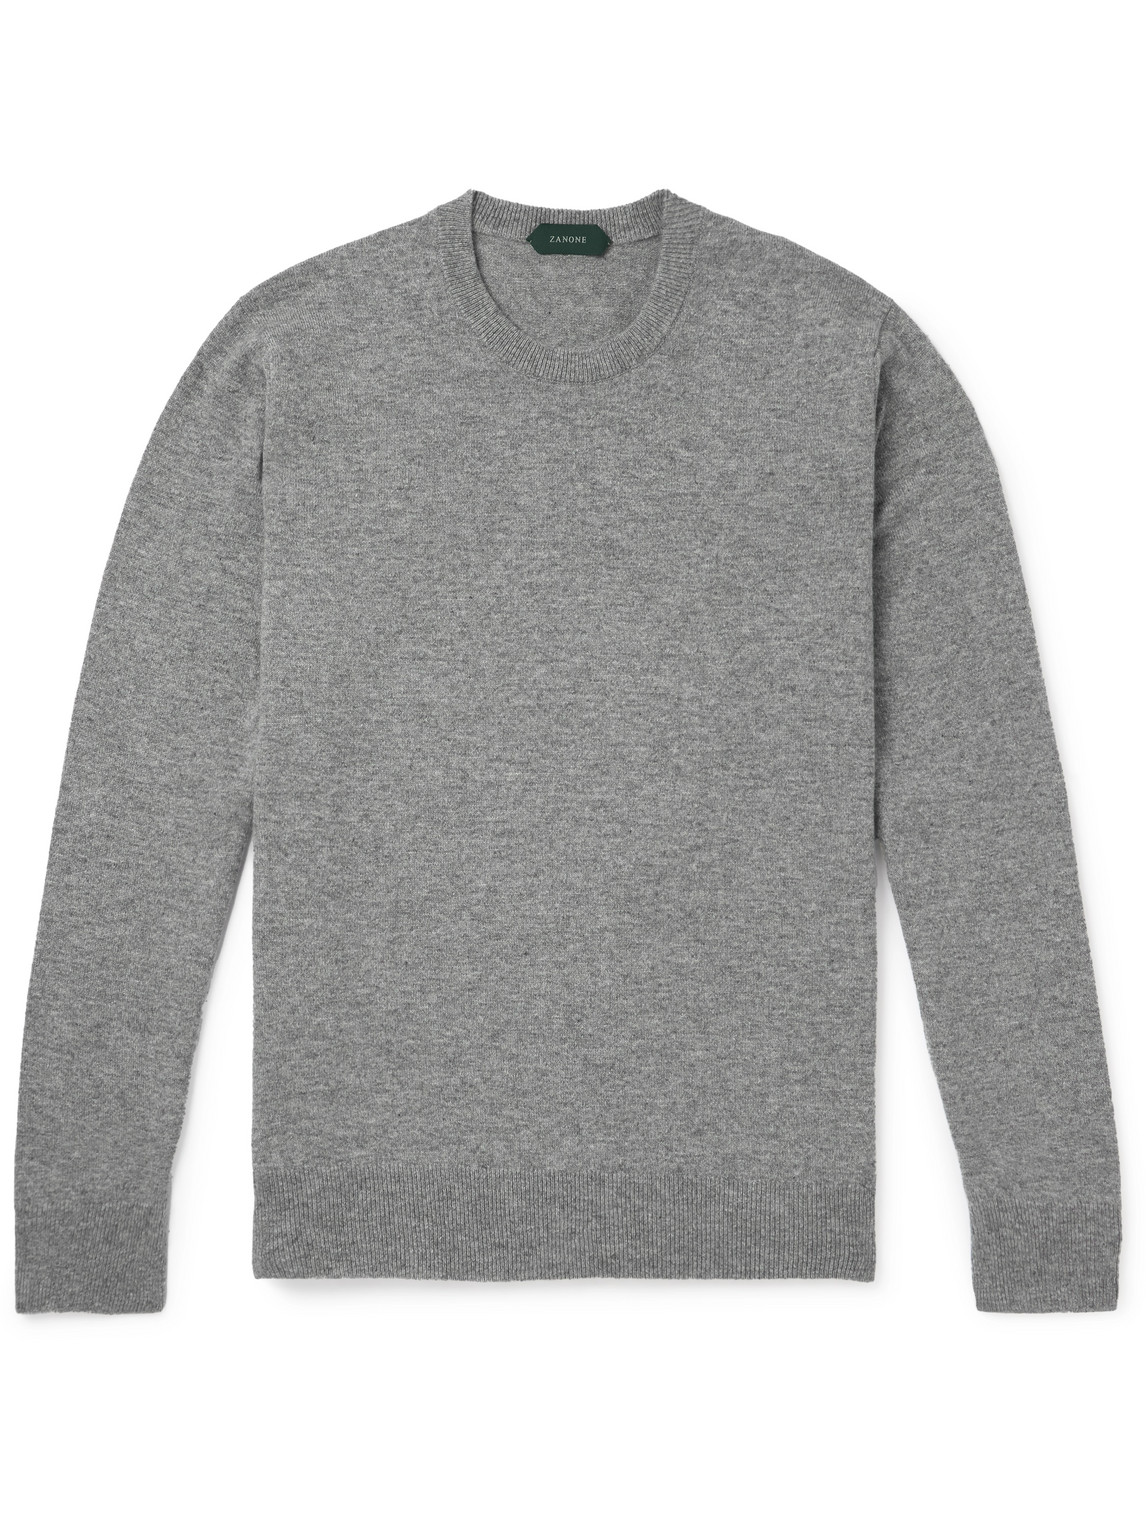 Incotex - Slim-Fit Wool Sweater - Men - Gray - IT 46 von Incotex